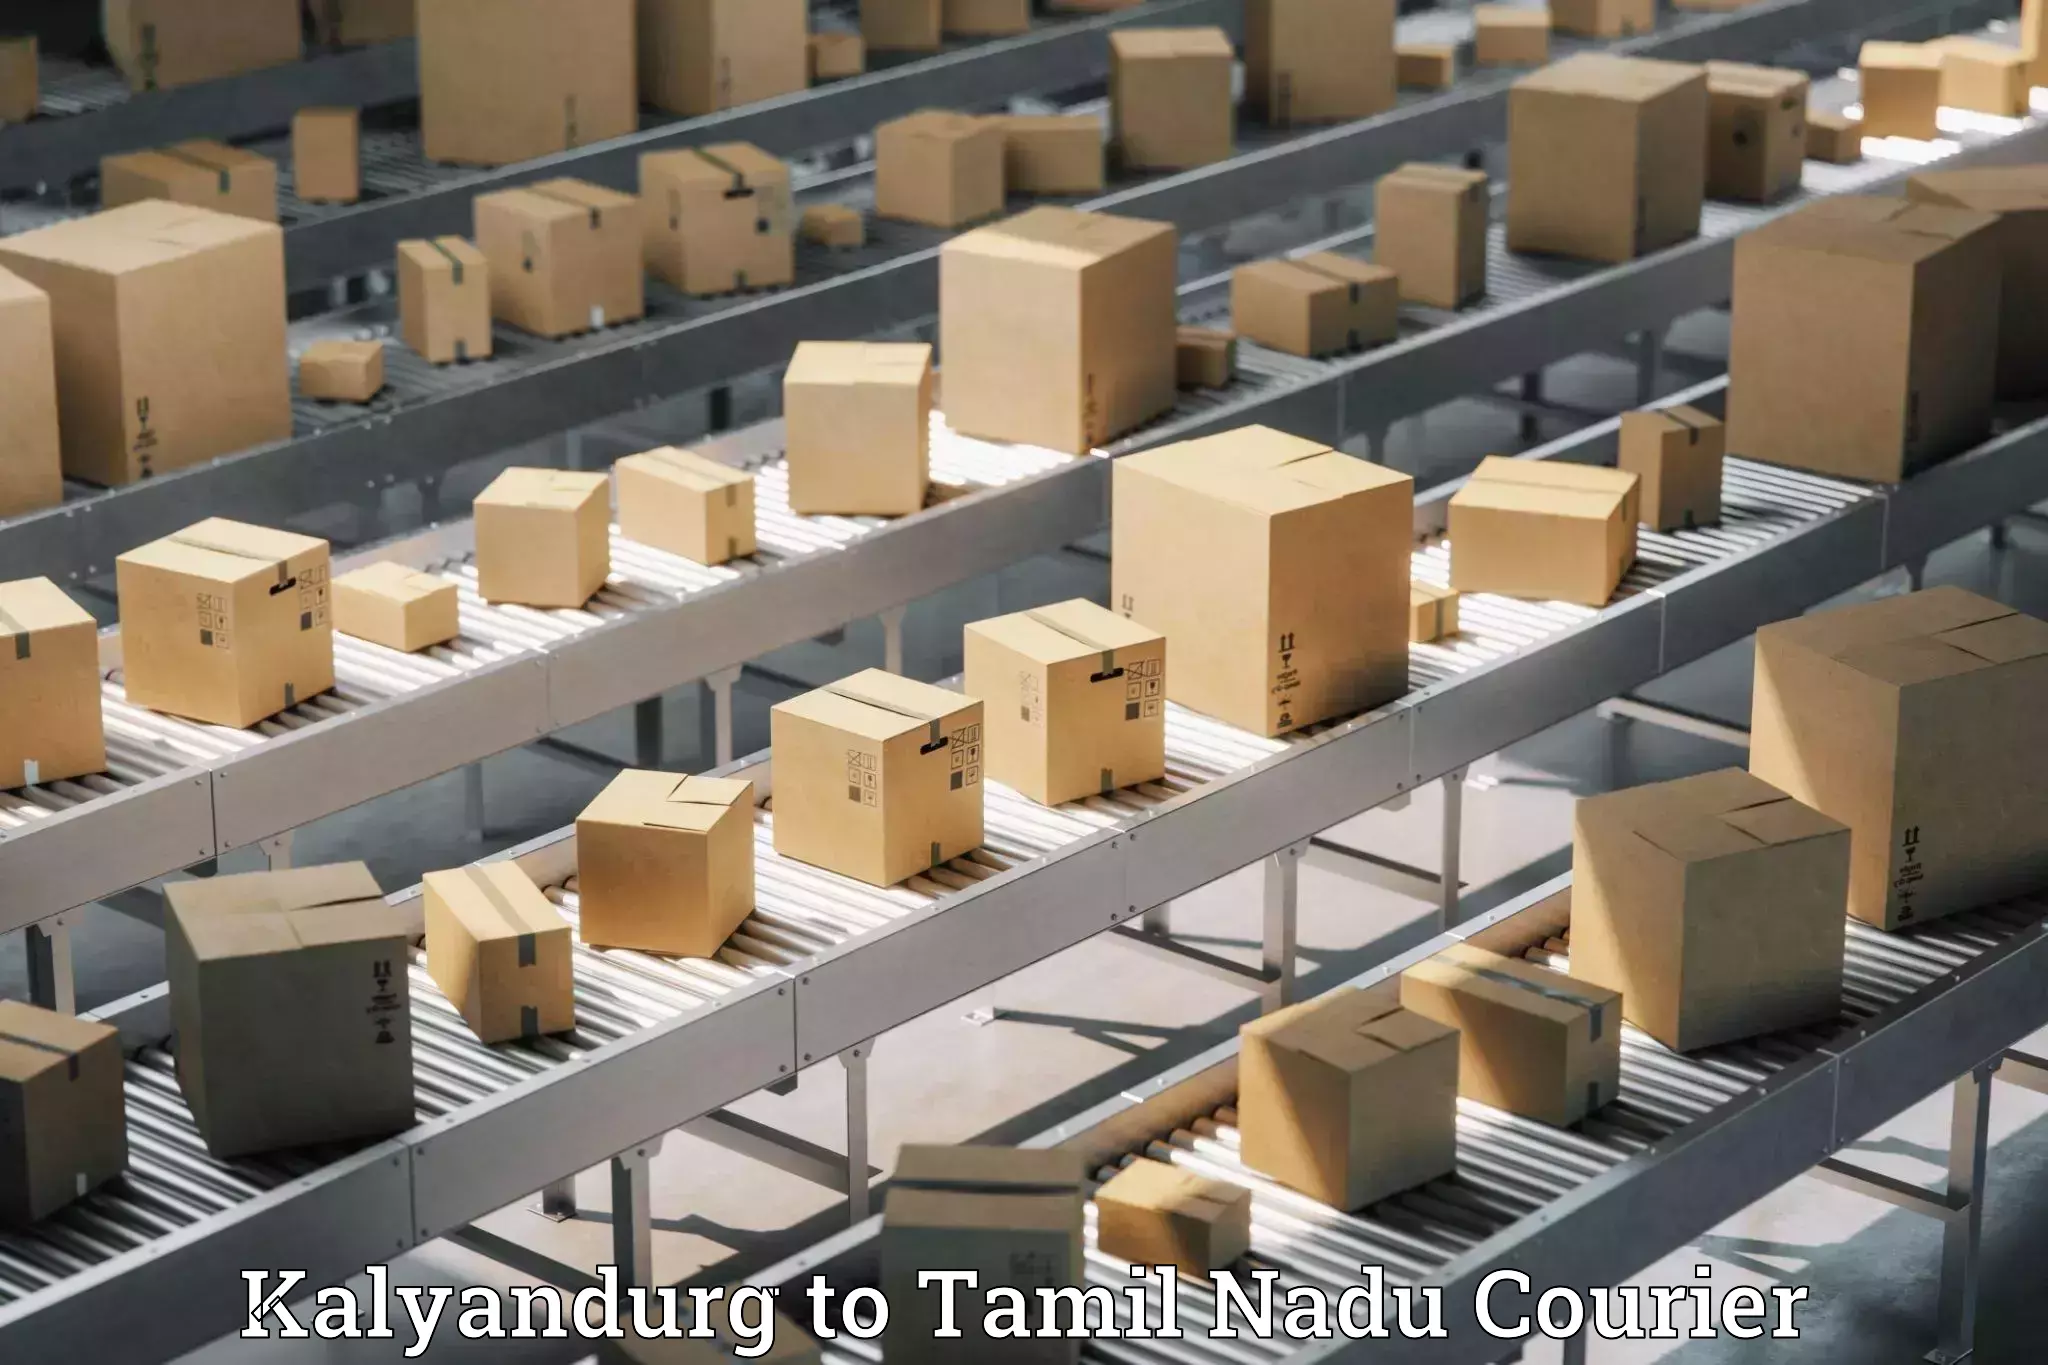 Efficient freight service Kalyandurg to Tamil Nadu